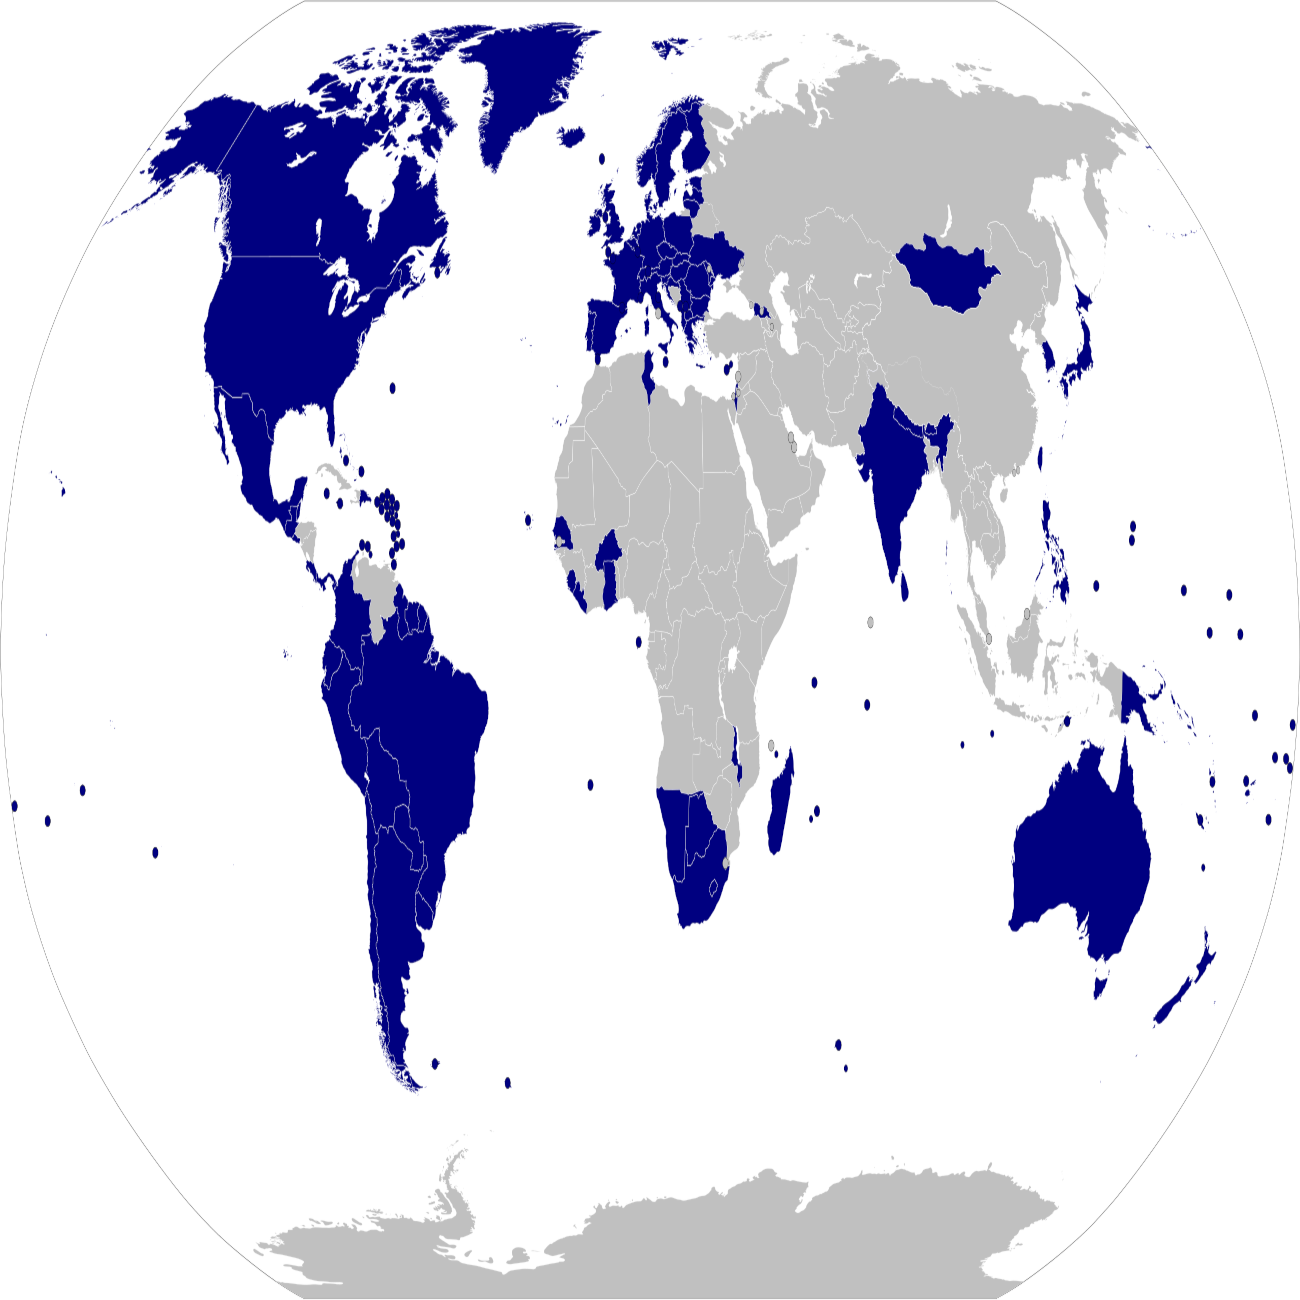 Una mappa delle democrazie elettorali secondo il rapporto 2021 Libertà nel mondo di Freedom House (fonte: commons.wikimedia.org).